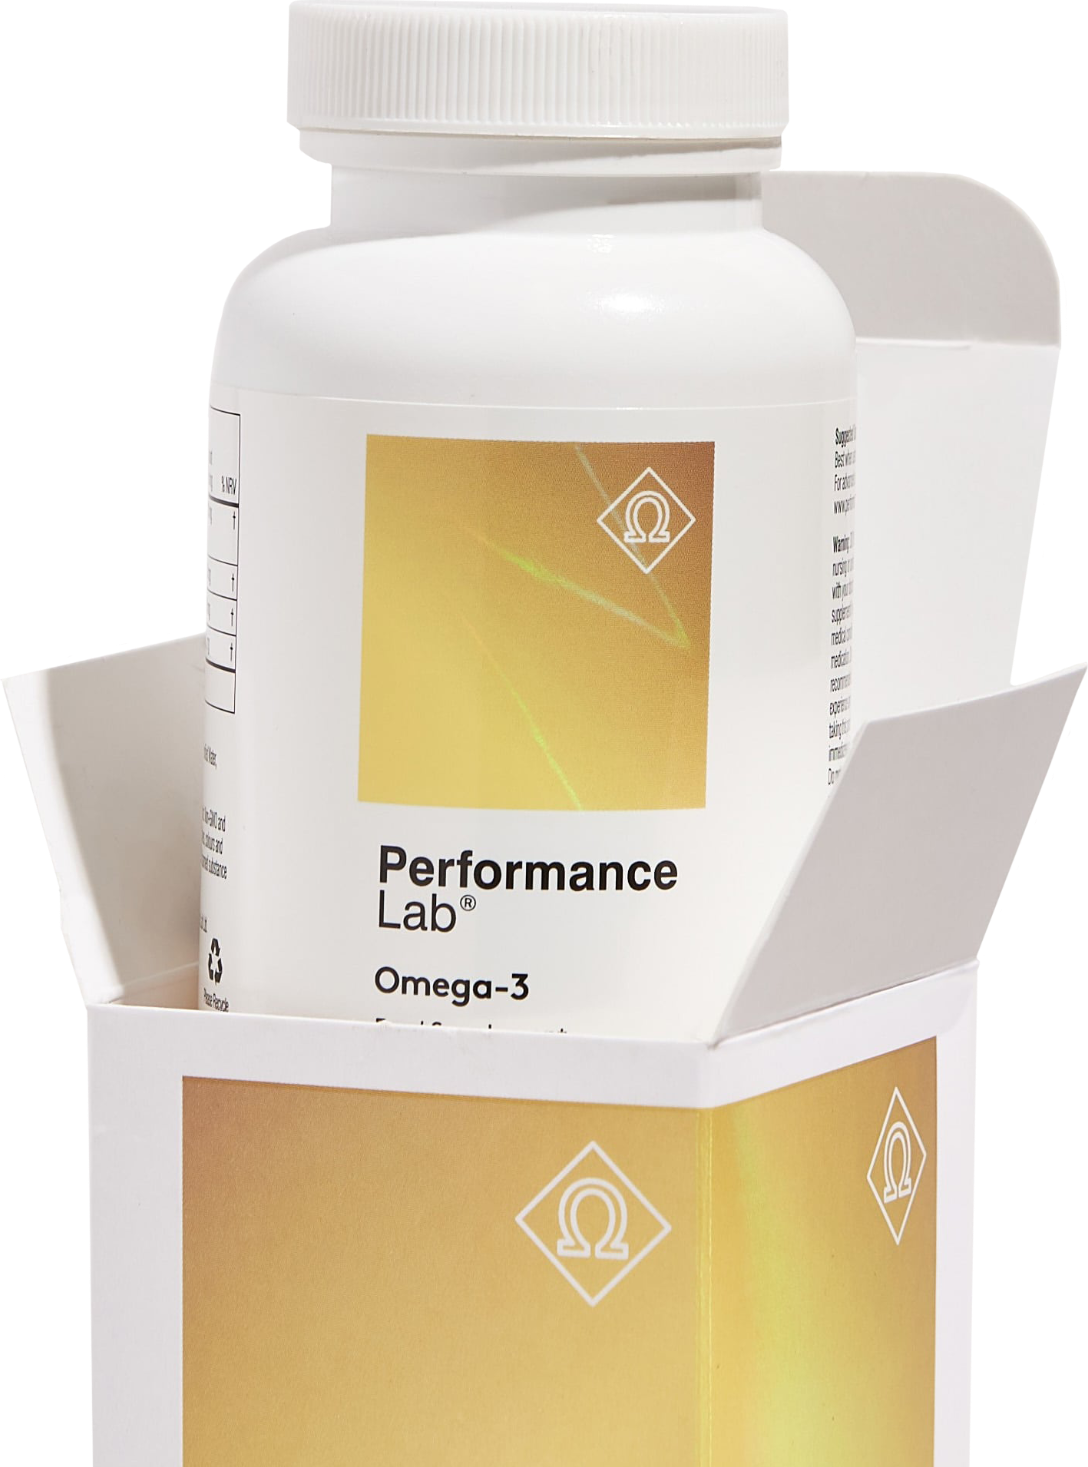 image of Performance Lab® Omega-3 bottle